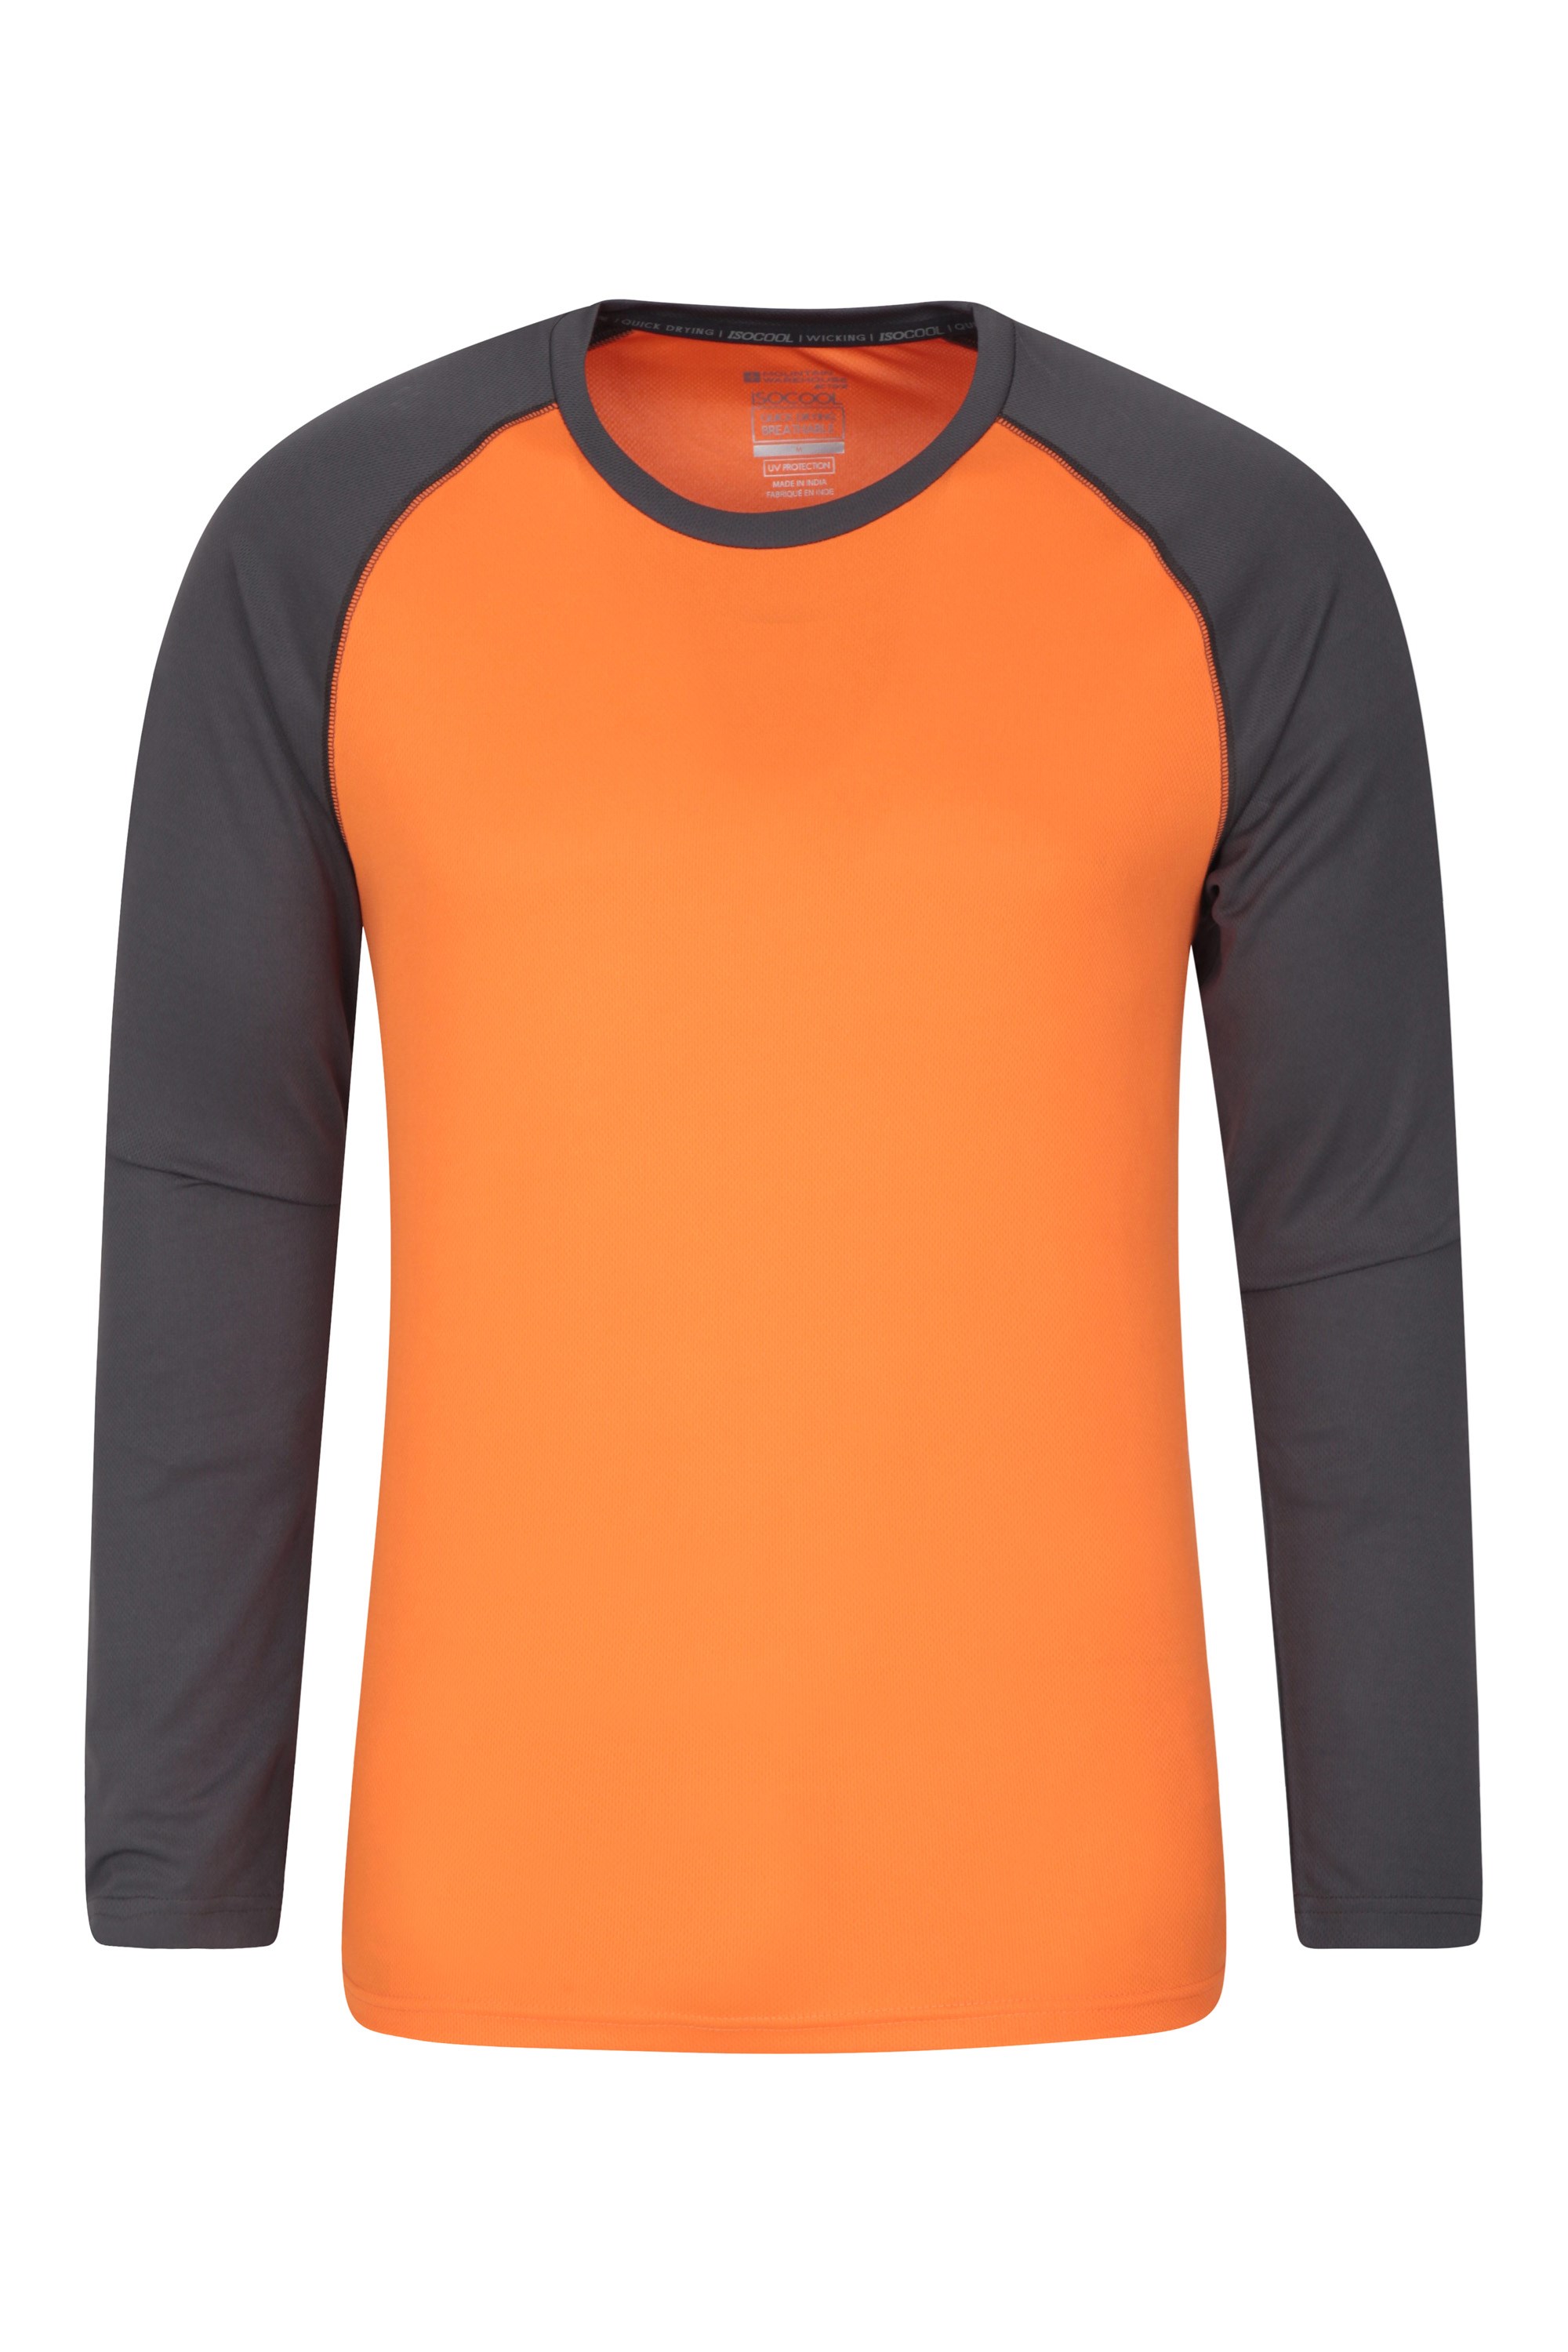 Endurance T-shirt à manches longues pour hommes - Orange